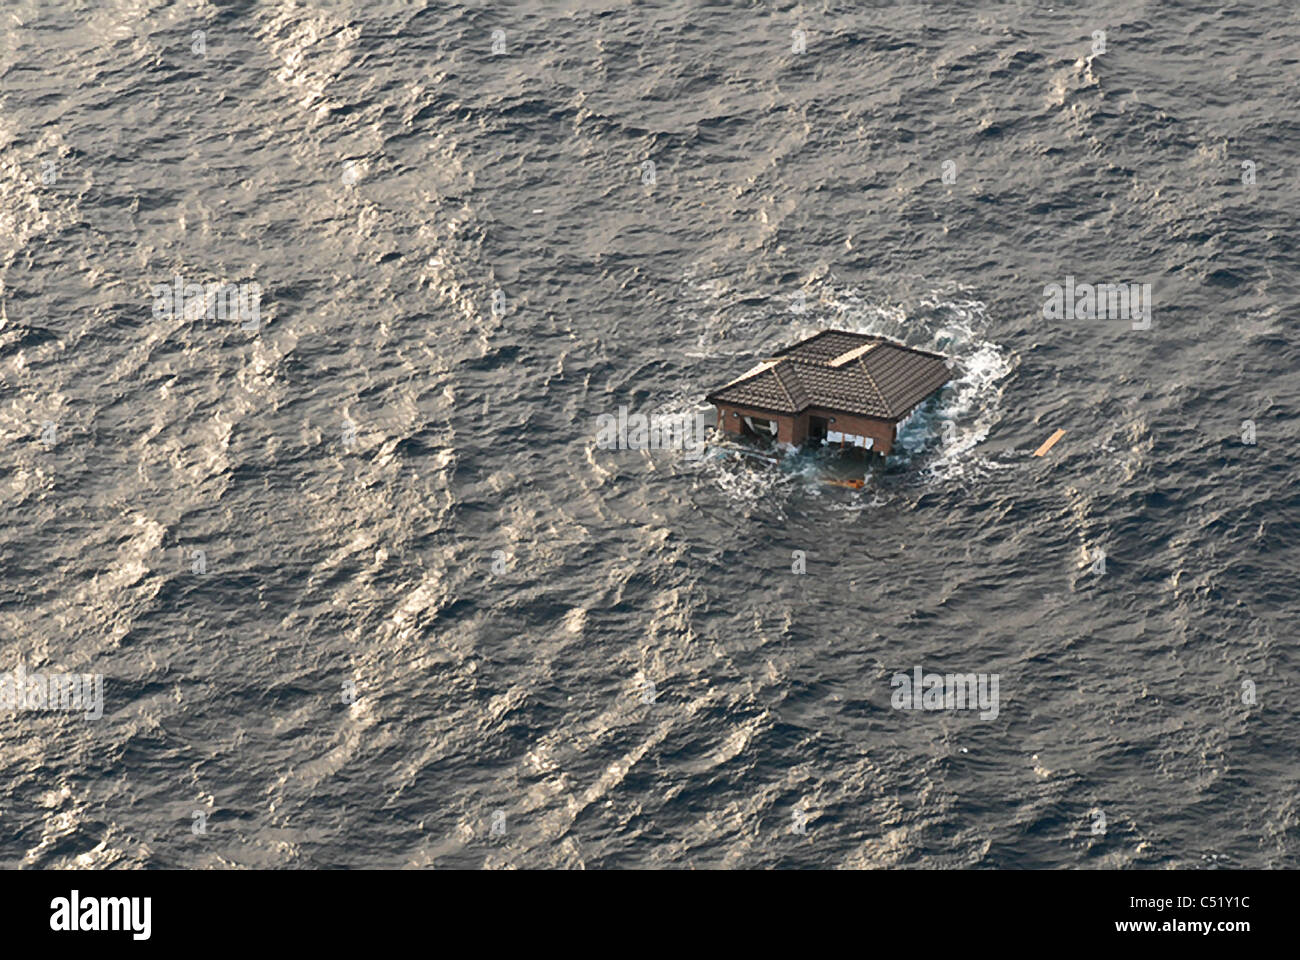 Vista aerea di casa alla deriva nell'Oceano Pacifico a seguito di un forte terremoto e tsunami in Giappone. Foto Stock